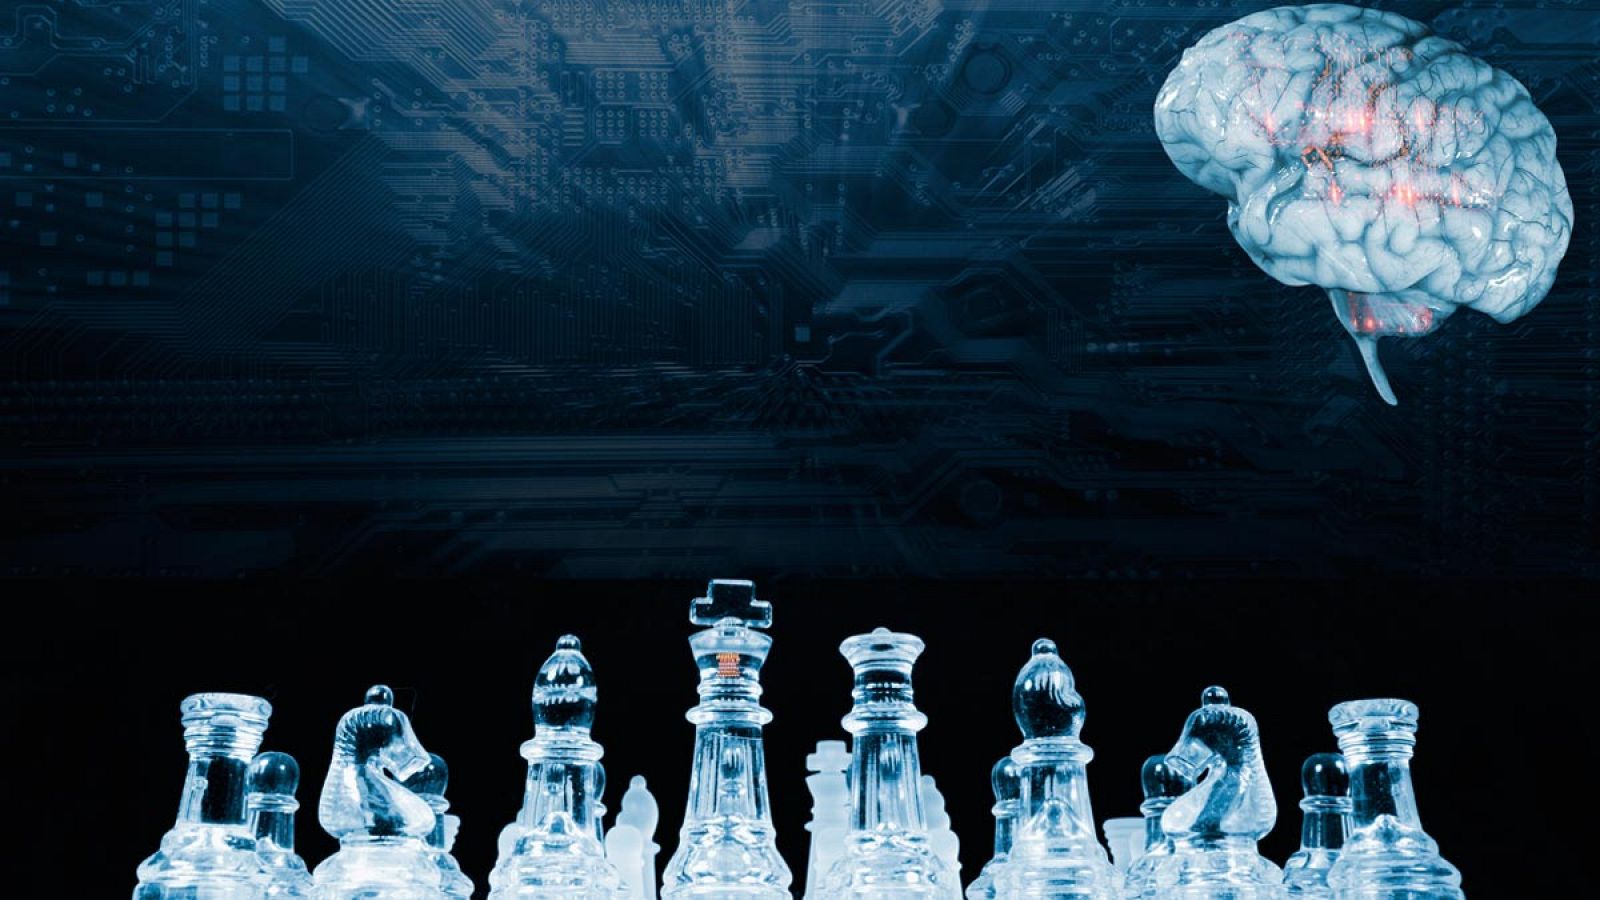 Jugar al ajedrez contra la máquina: Mejora con la tecnología